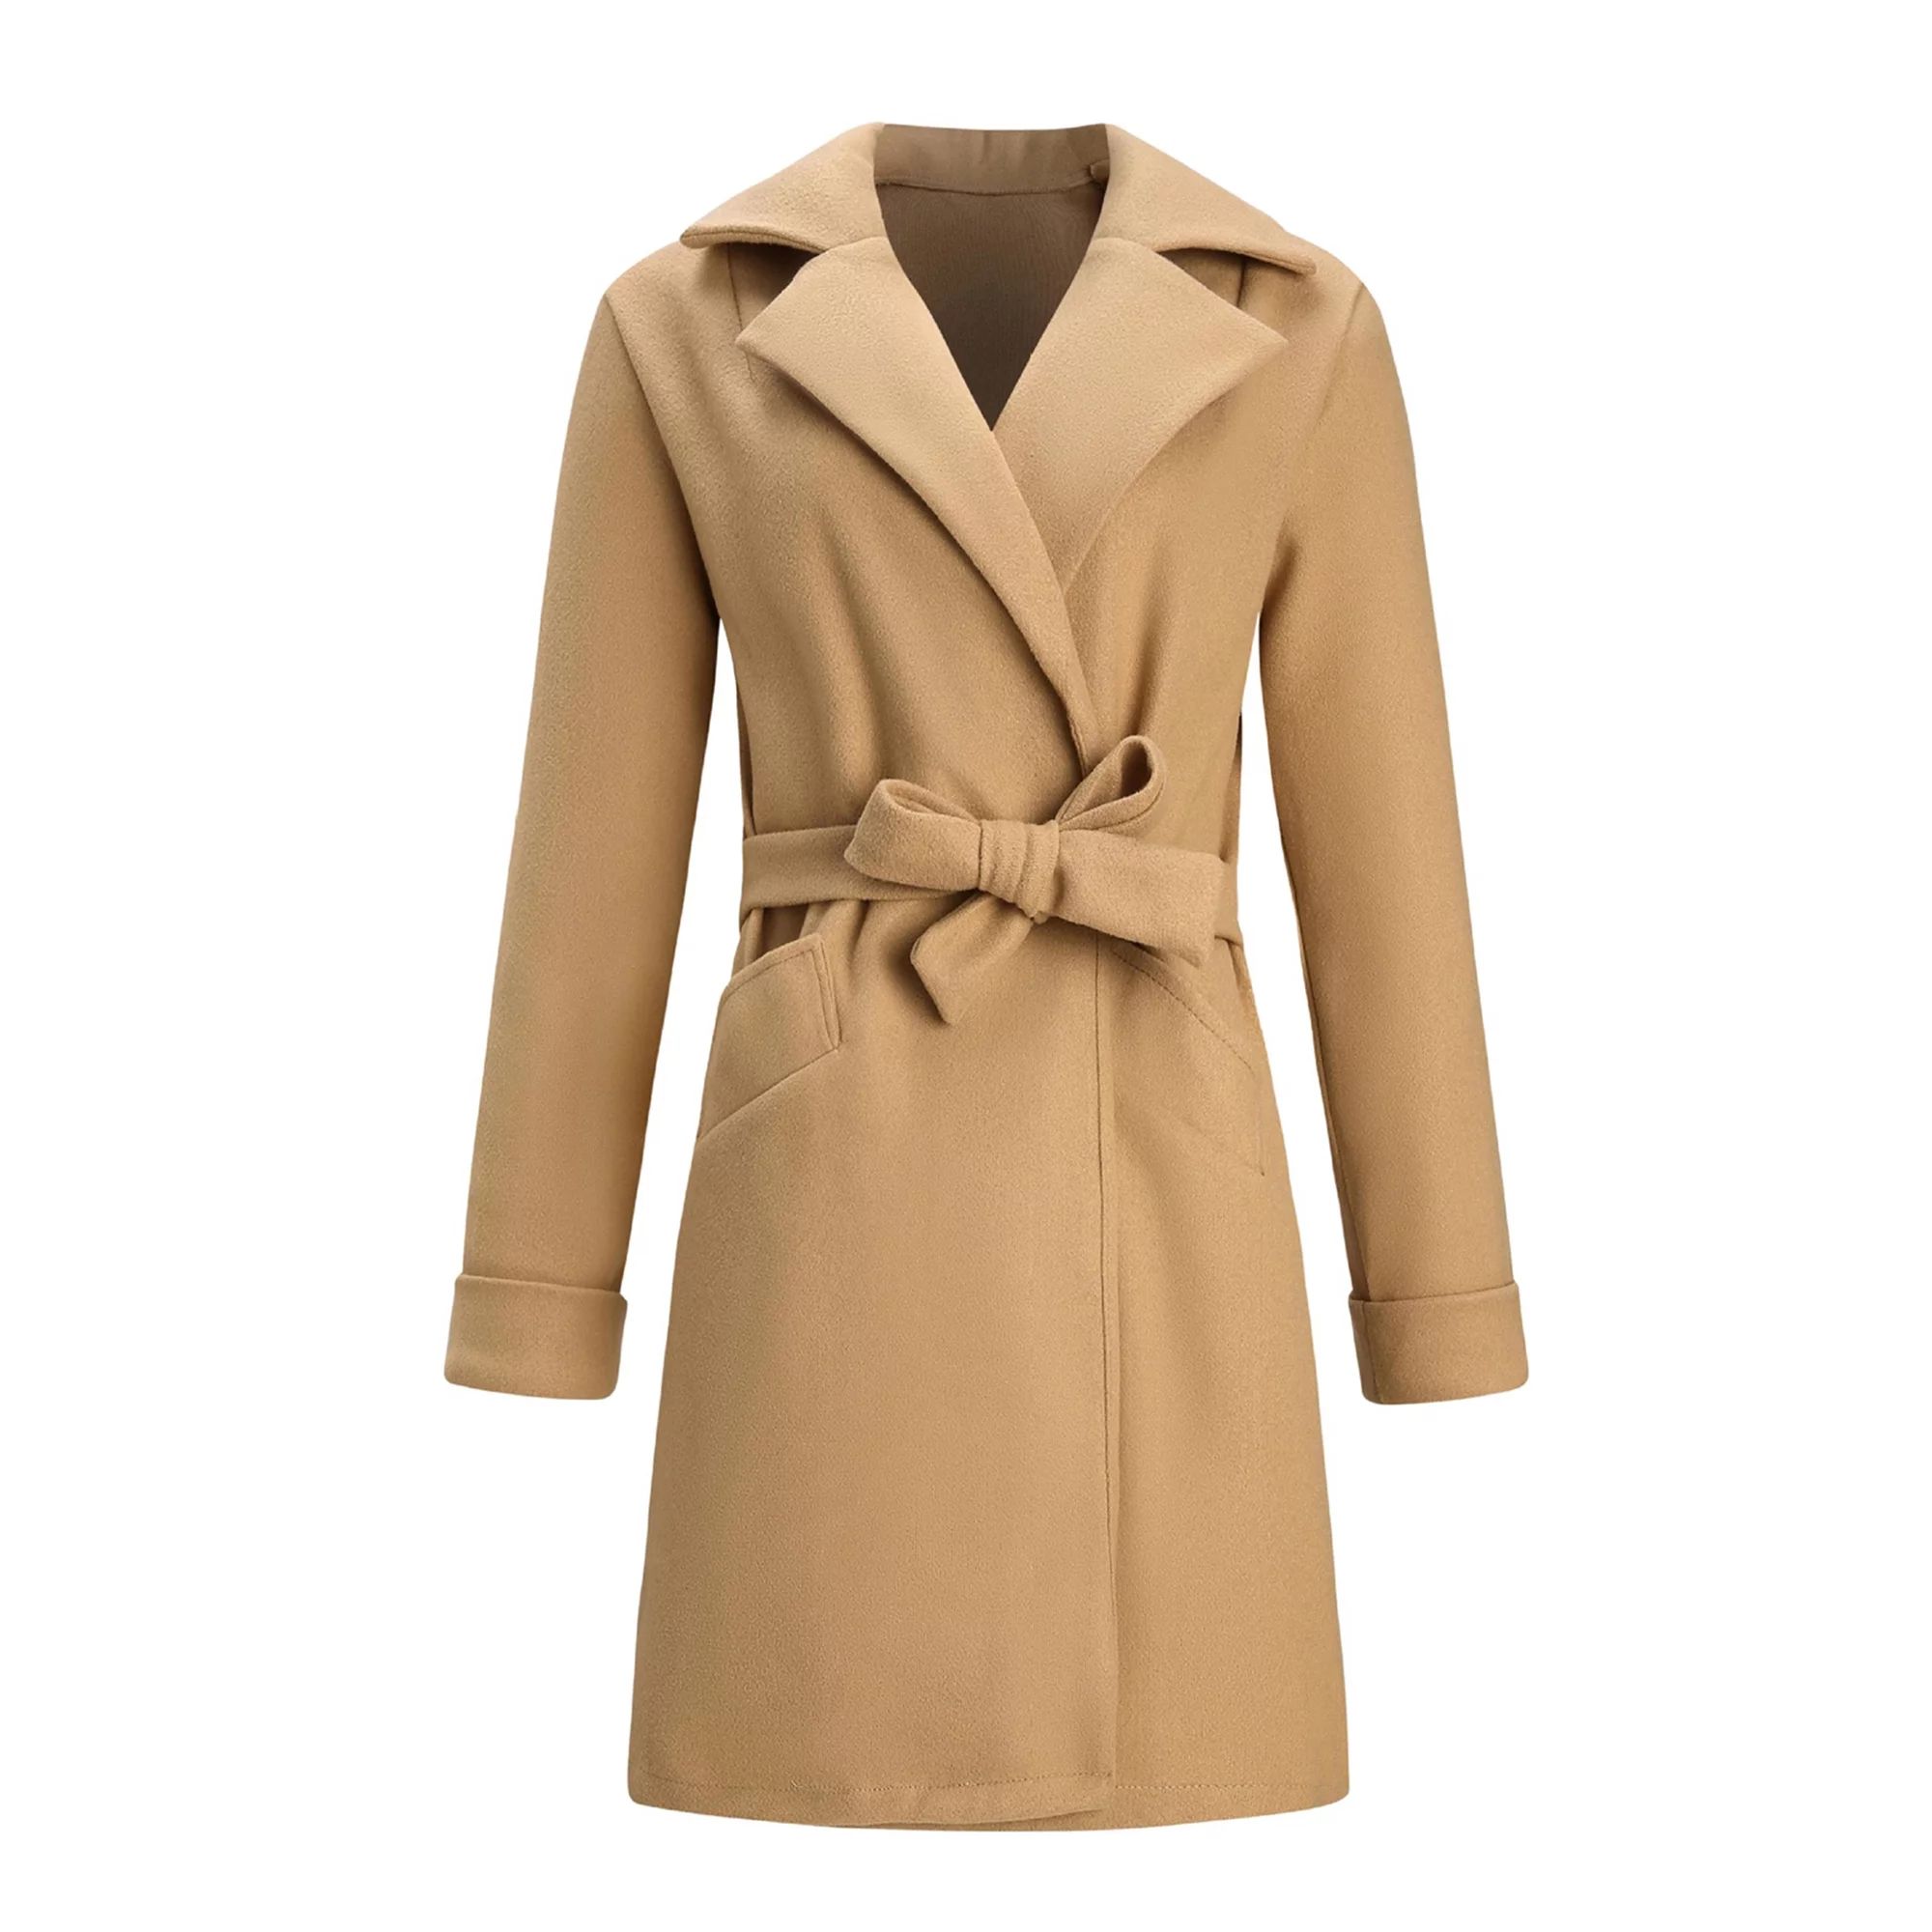 Women Trench Coat Long Sleeve Pea Coat Lapel Warm Open Front Belted Long Jacket Overcoat Outwear ... | Walmart (US)